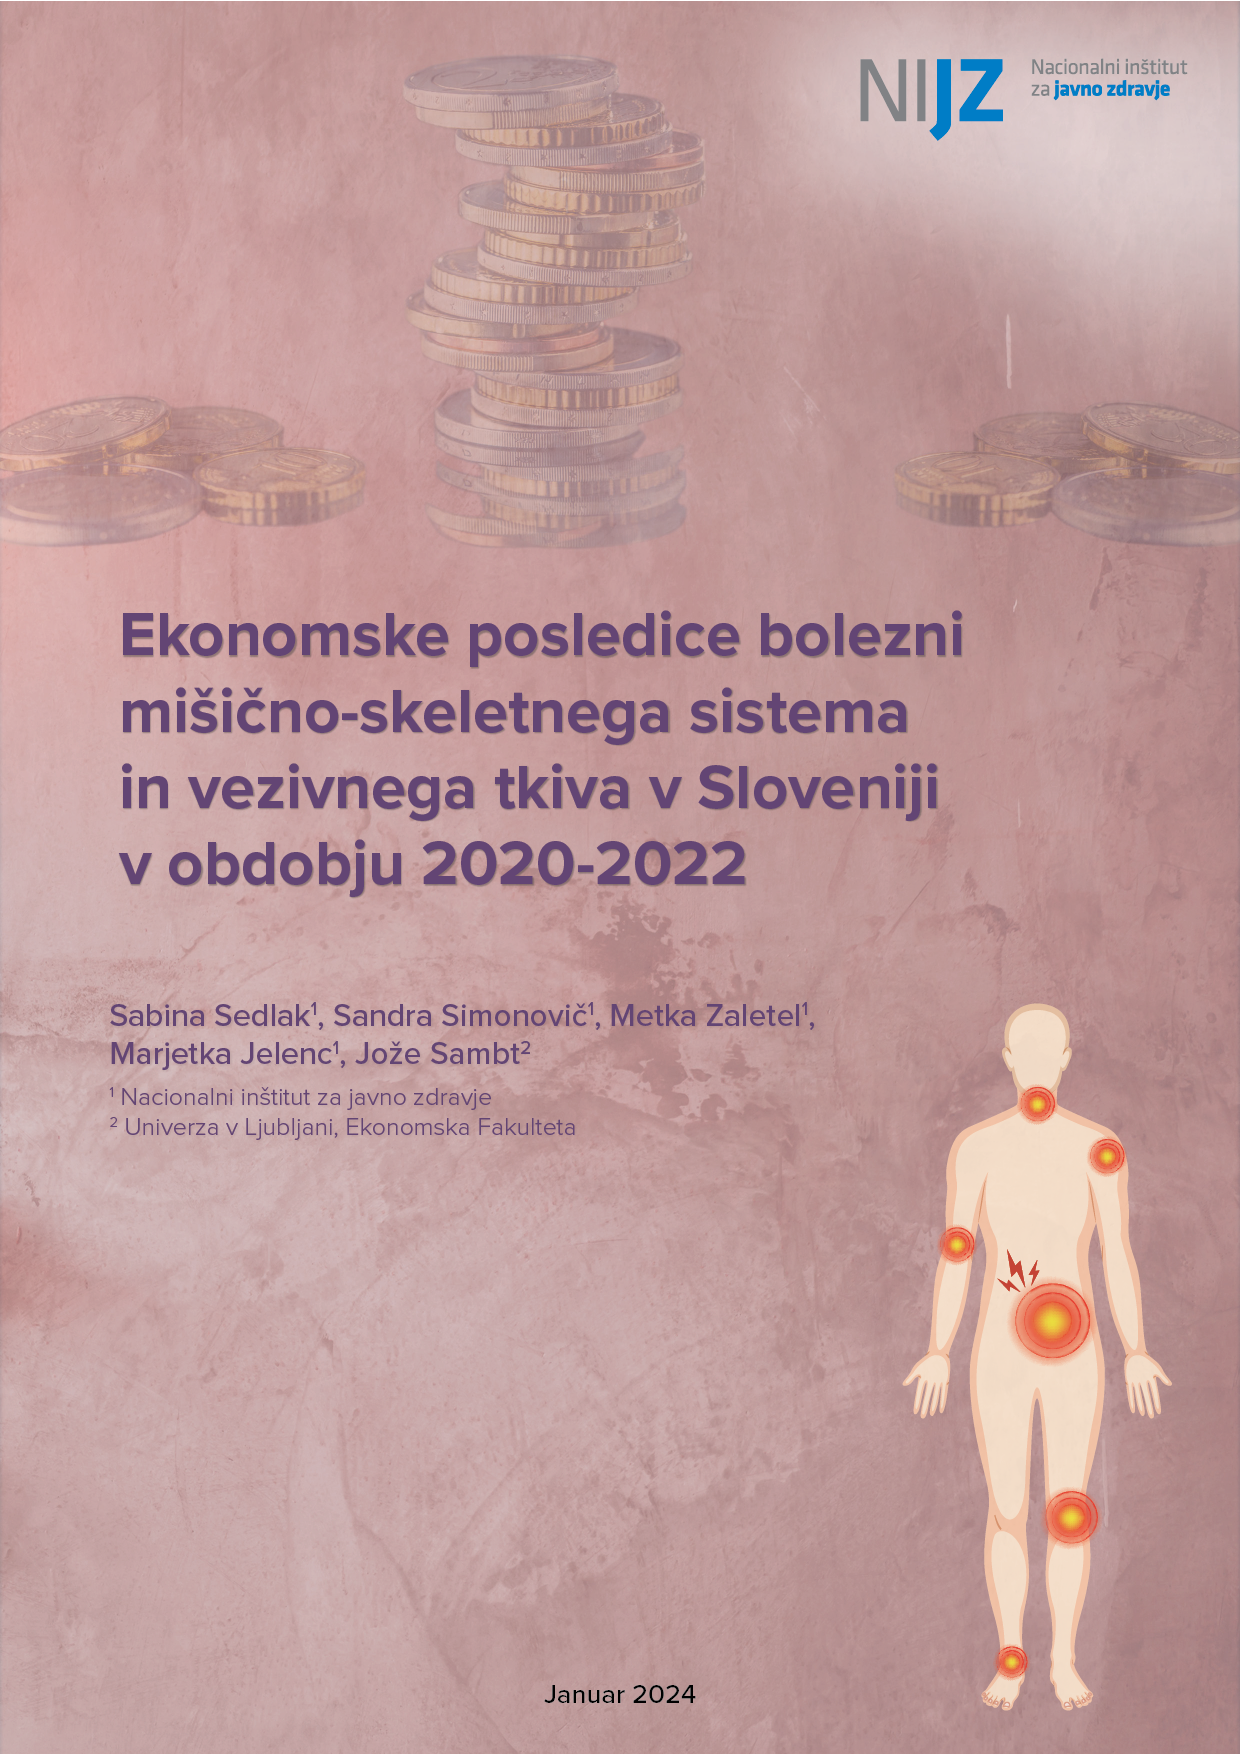 Ekonomske posledice bolezni mišično-skeletnega sistema in vezivnega tkiva v Sloveniji v obdobju 2020-2022